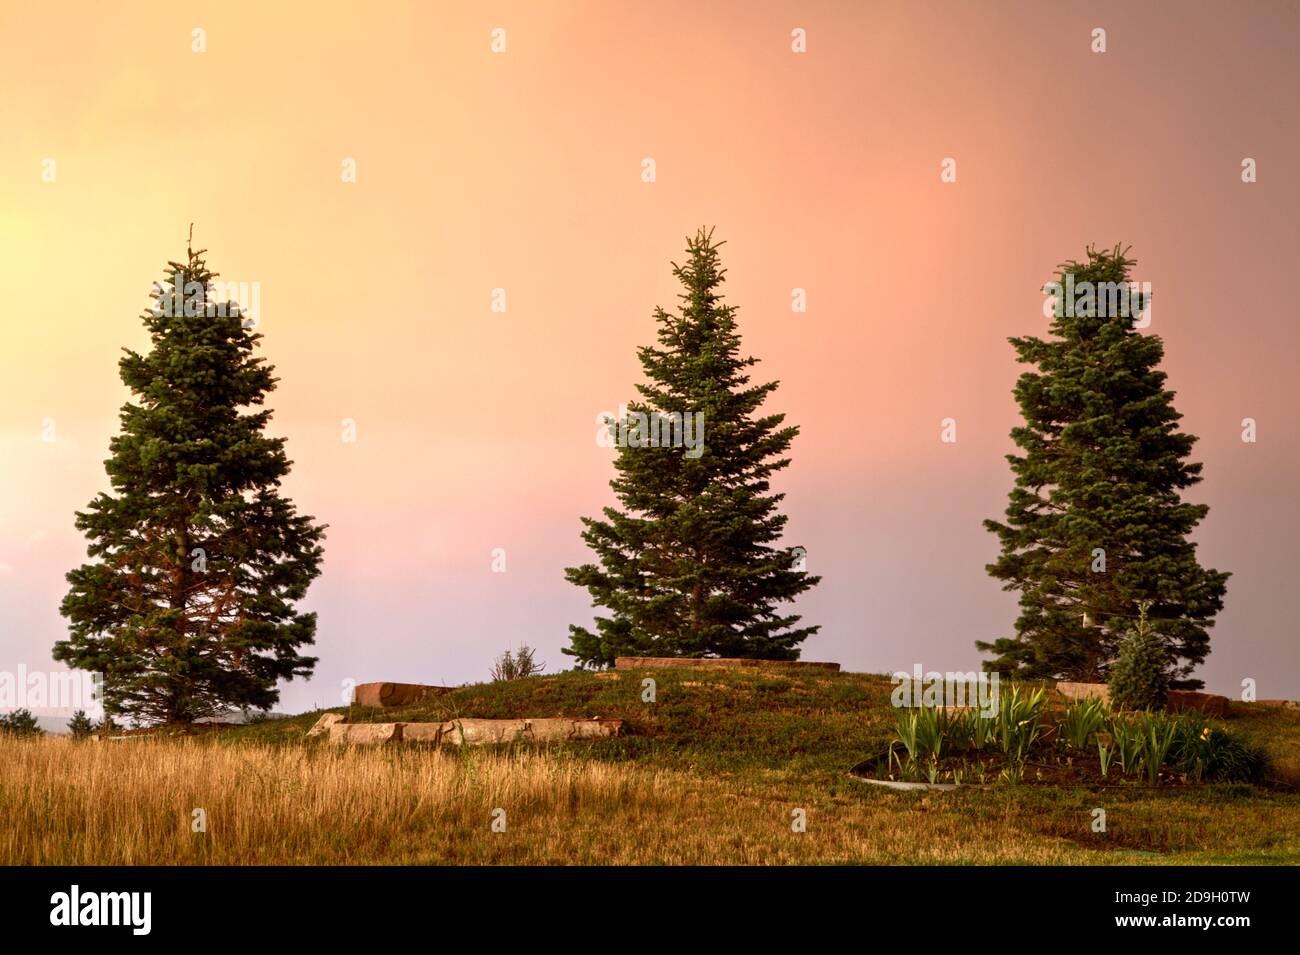 Trois épinettes du Colorado poussent sur la crête d'une petite colline sur le fond d'un ciel coloré par le soleil couchant. Banque D'Images